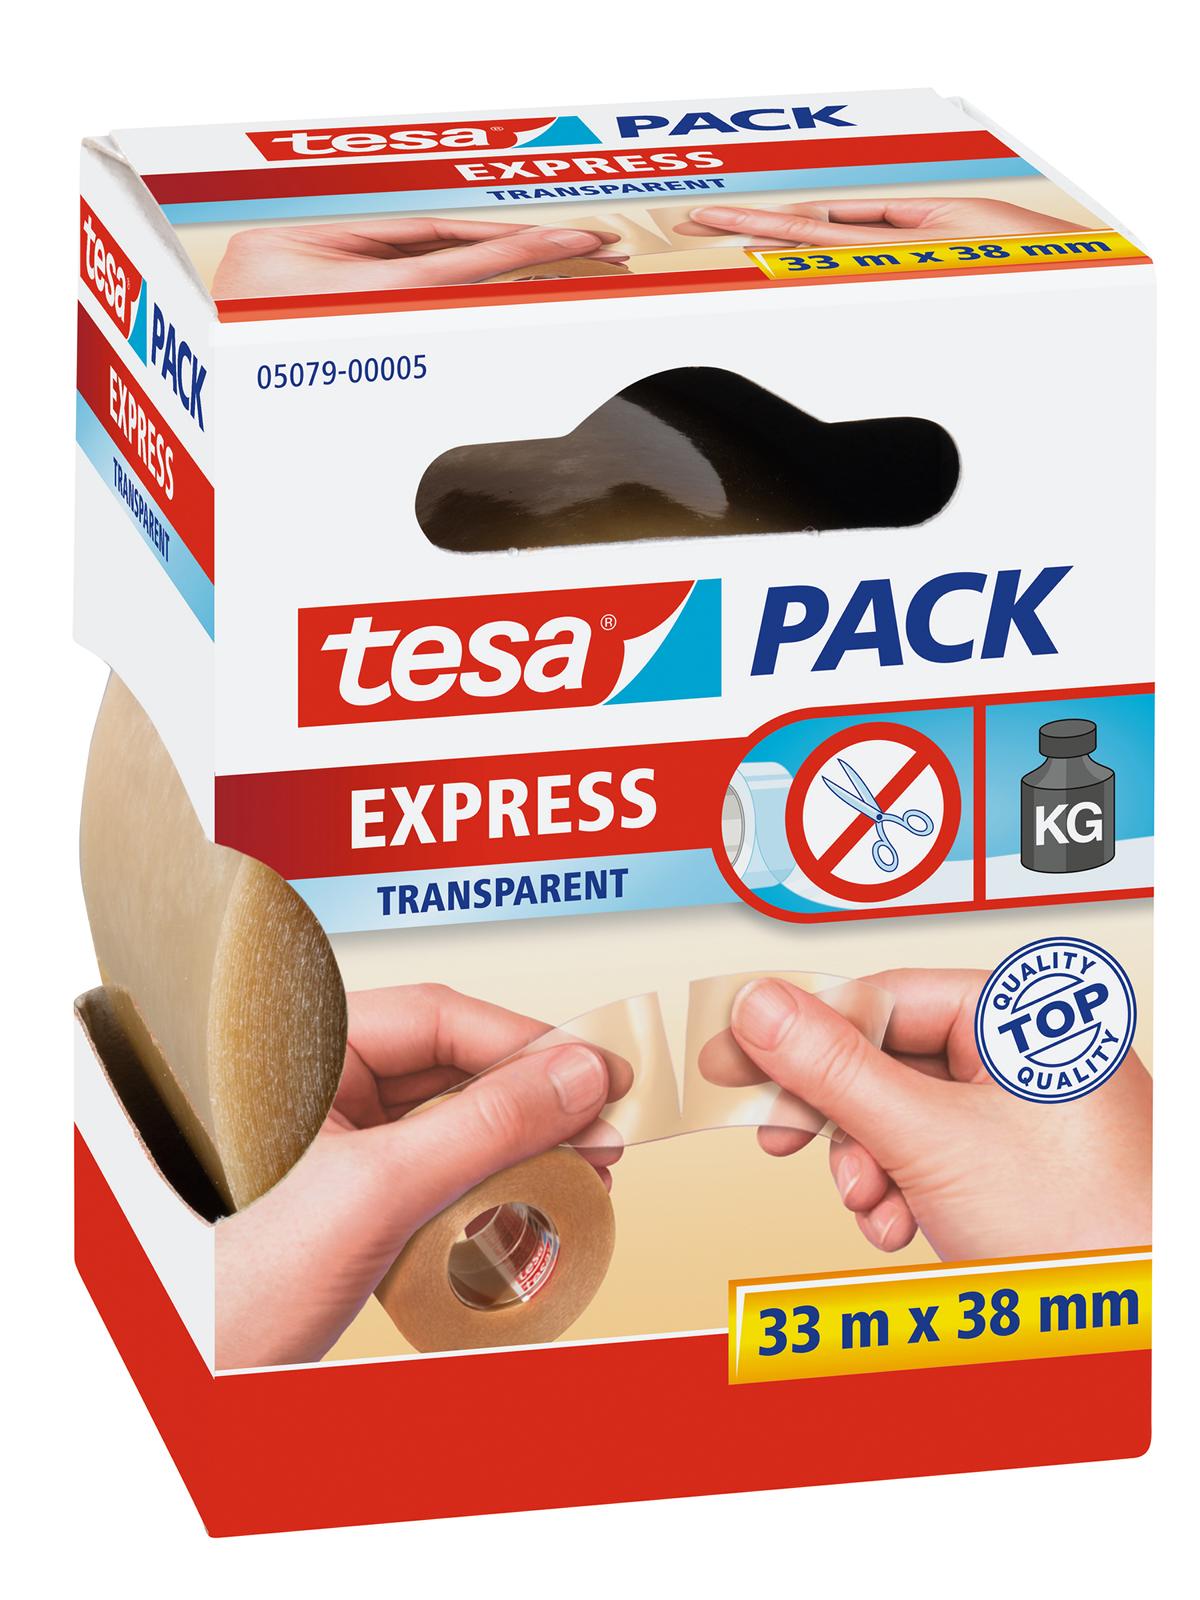 tesa Express tesapack, transparent, 33 m